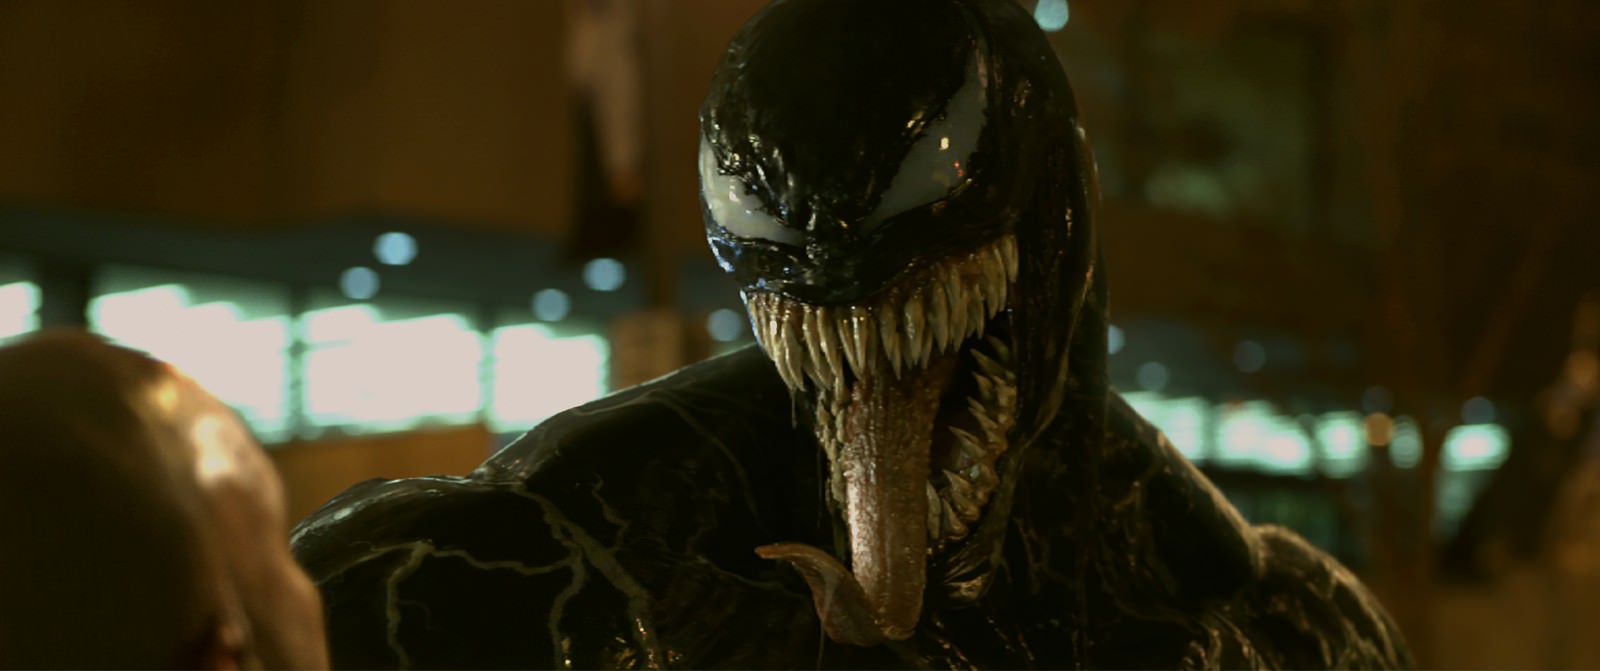 Movie, Venom(美國, 2018年) / 猛毒(台灣) / 毒液：致命守护者(中國) / 毒魔(香港), 電影劇照, 角色與演員介紹